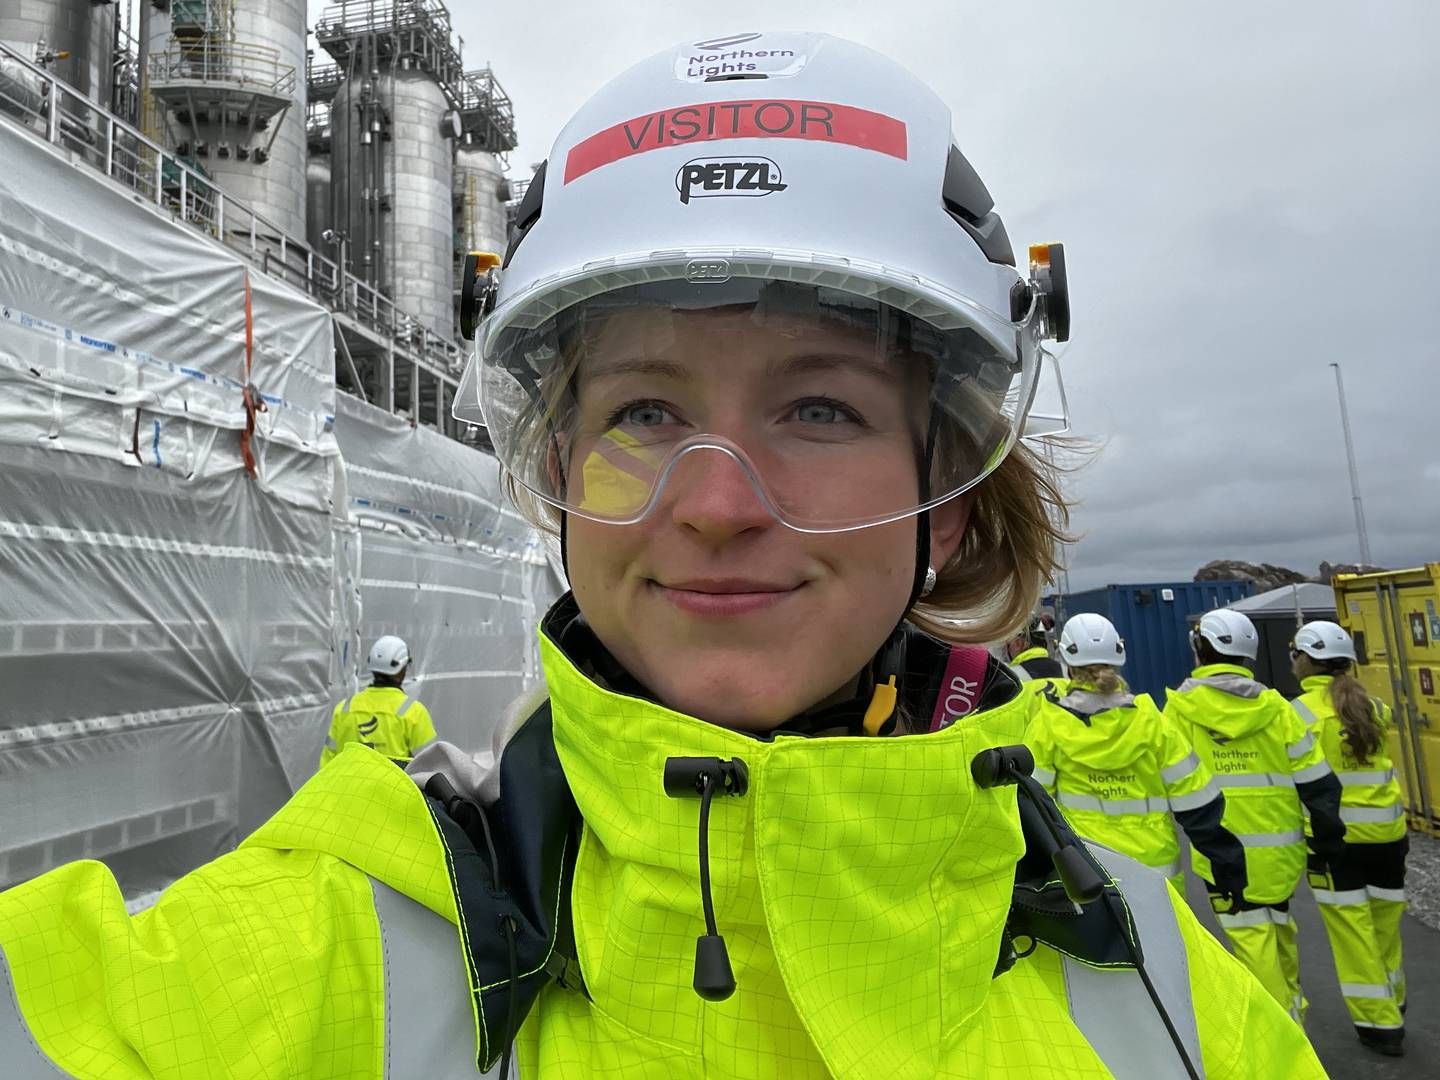 Pia Winterkjær, her under et besøk til Northern Lights, har fått ny jobb i Stavanger. | Foto: Privat